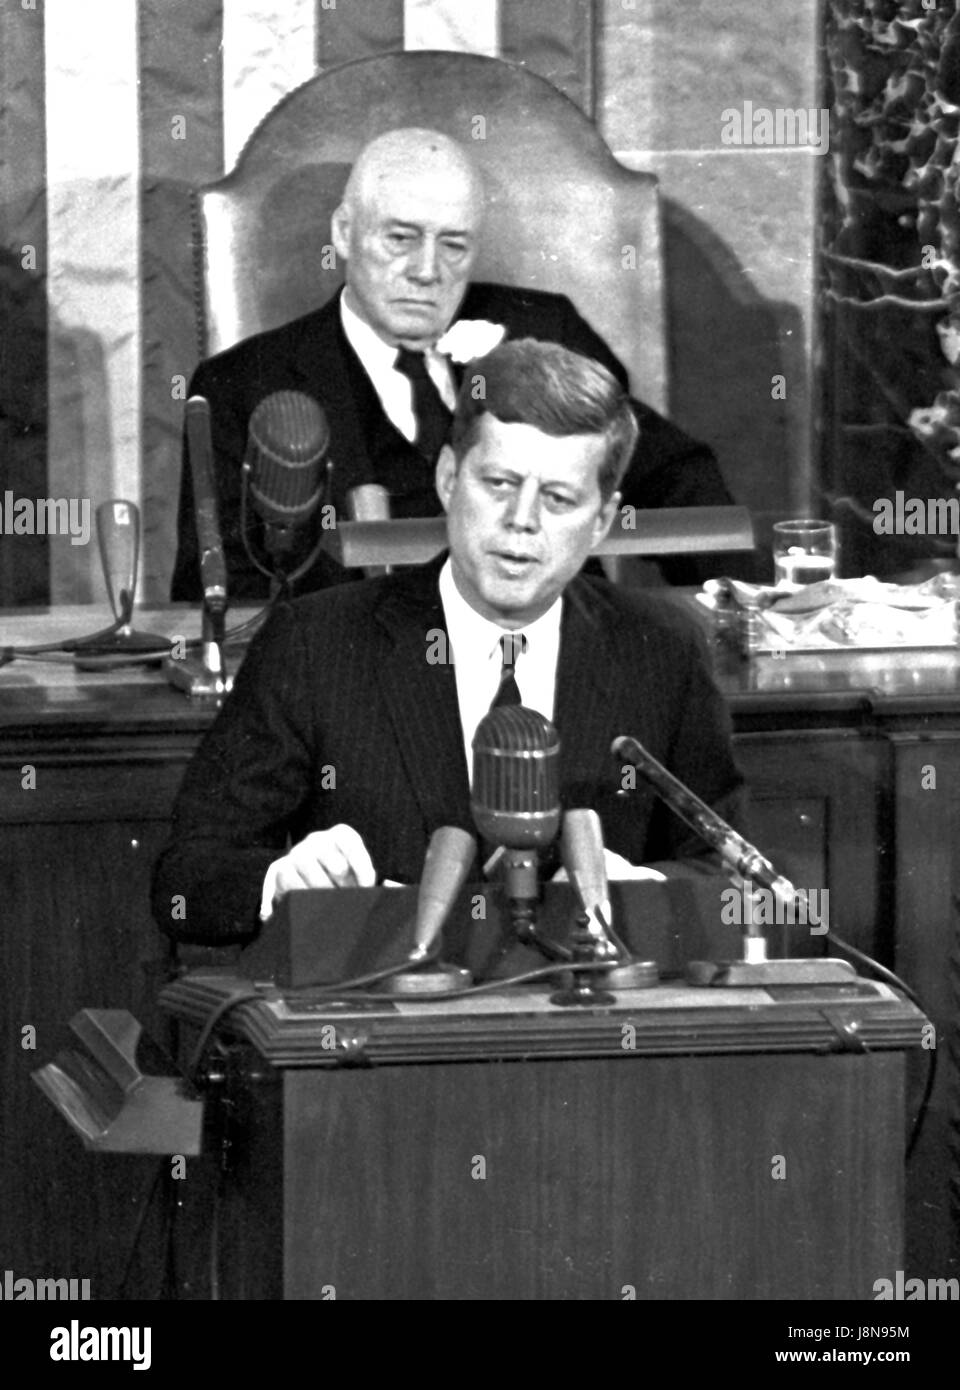 Le président des États-Unis John F. Kennedy décrit sa vision pour l'exploration habitée de l'espace à une session conjointe du Congrès des États-Unis, à Washington, DC Le 25 mai 1961 lorsqu'il a déclaré, '...je crois que cette nation devrait s'engager à atteindre l'objectif, avant cette décennie est hors de l'atterrissage, un homme sur la lune et lui revenant en toute sécurité à la terre." Cet objectif a été atteint lorsque l'astronaute Neil A. Armstrong devient le premier homme à poser le pied sur la lune à 10 h 56 HAE, le 20 juillet 1969. De l'arrière-plan est le président de la Chambre T. Sam Rayburn (démocrate du Texas). Credit : Arnie S Banque D'Images